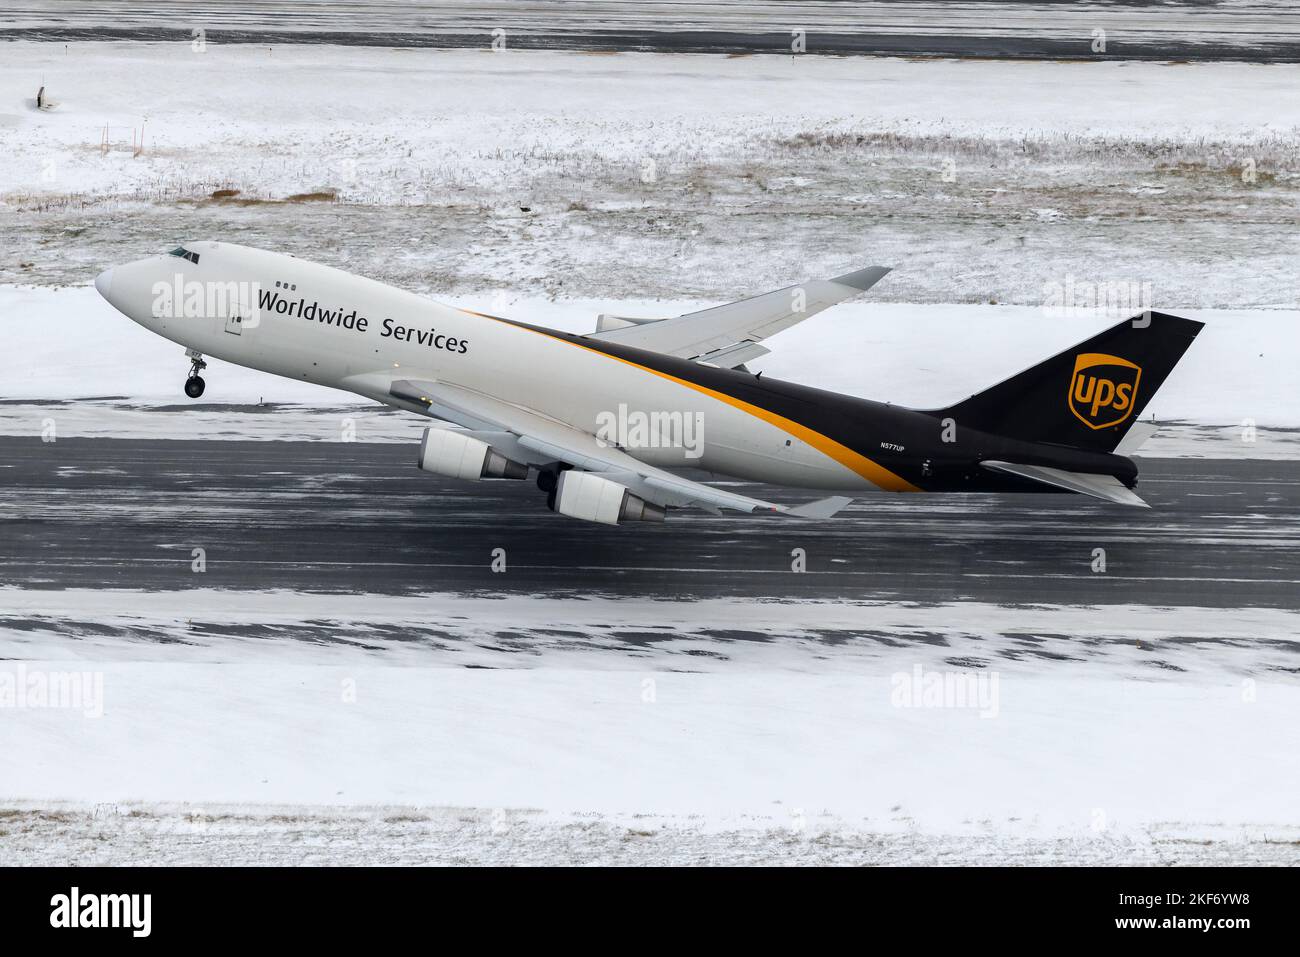 UPS Cargo Boeing 747-400F décollage de l'aéroport d'Anchorage après une forte chute de neige. Avion d'UPS Cargo 747 départ cargo avec neige. Banque D'Images